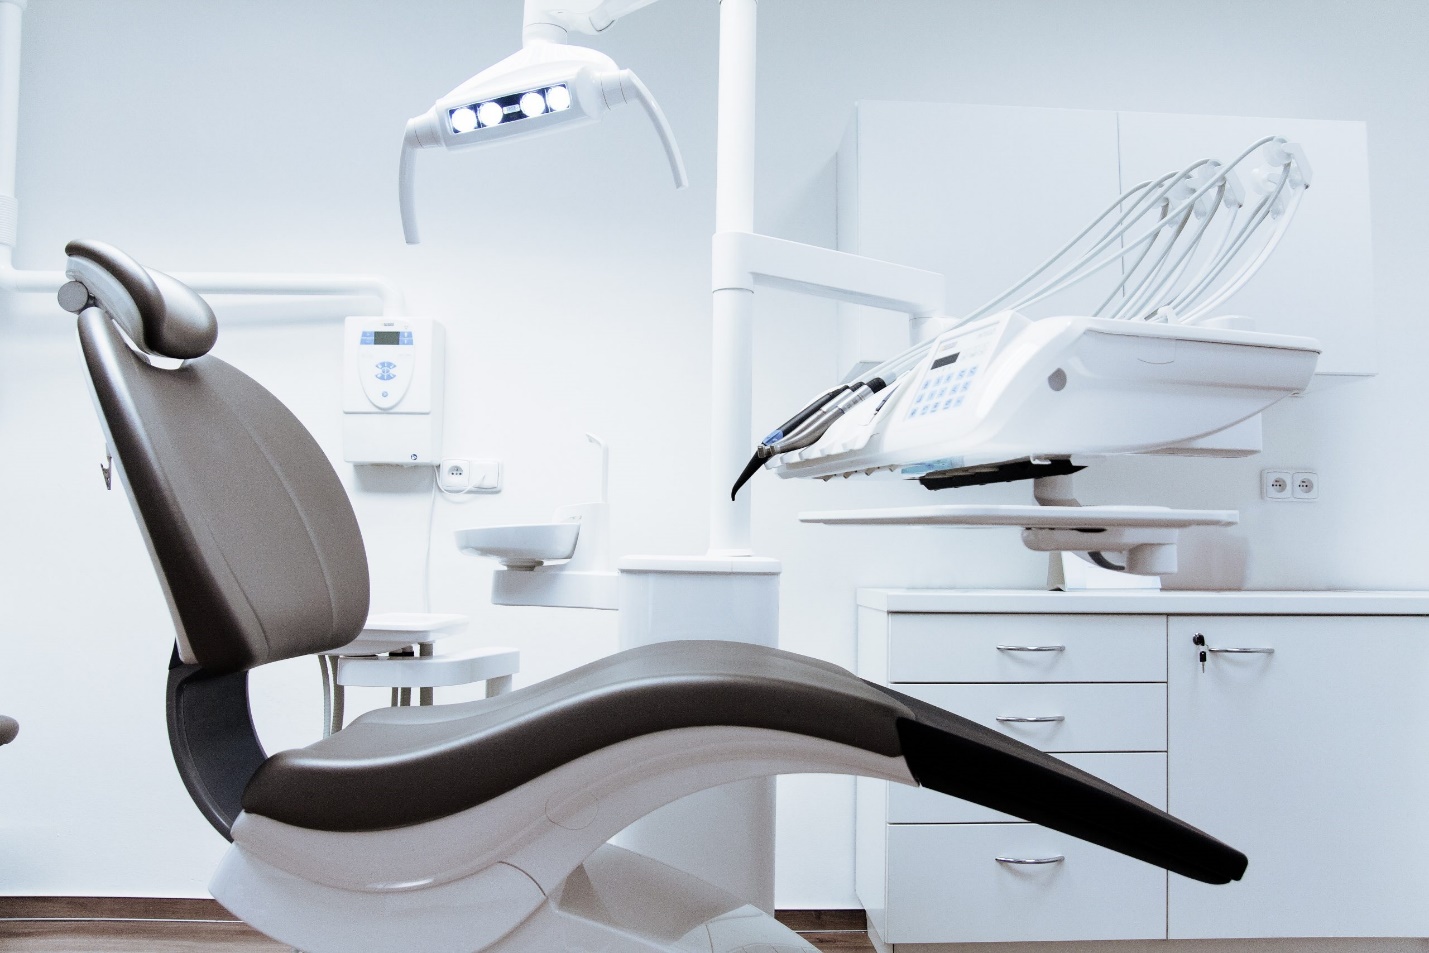 10 نکته مهم برای انتخاب بهترین کلینیک دندانپزشکی